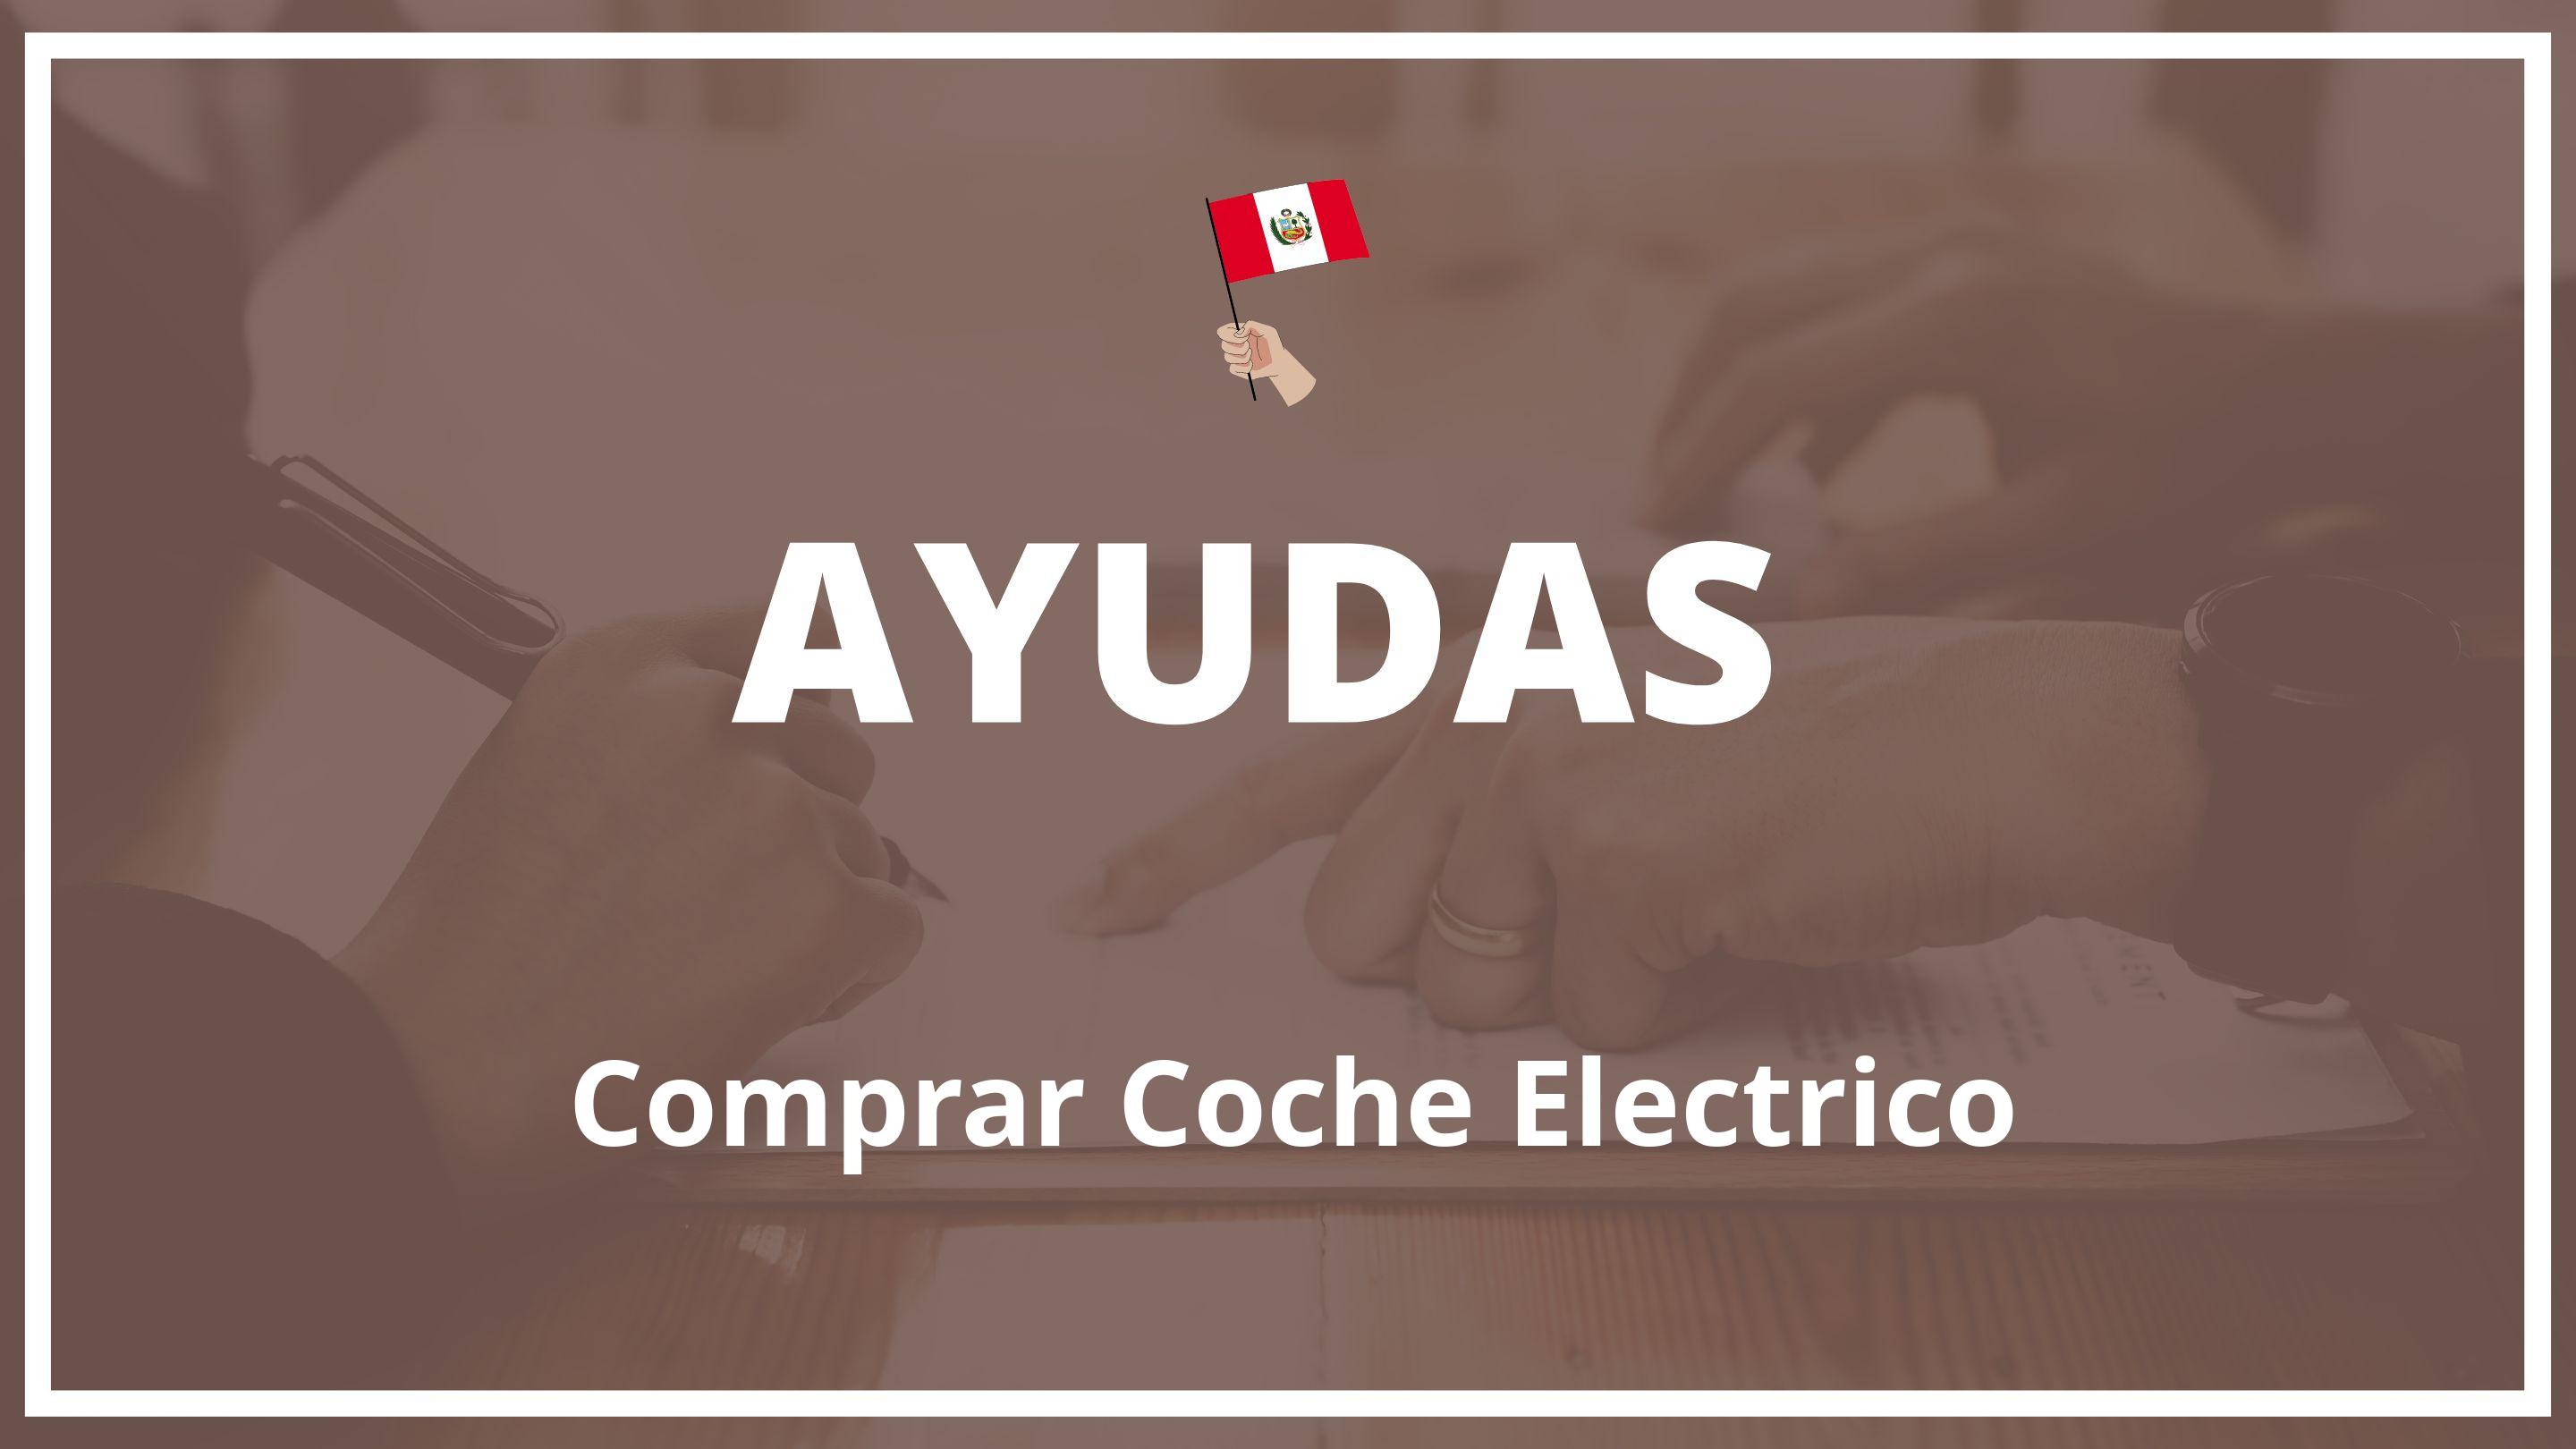 Ayudas para comprar coche electrico Peru